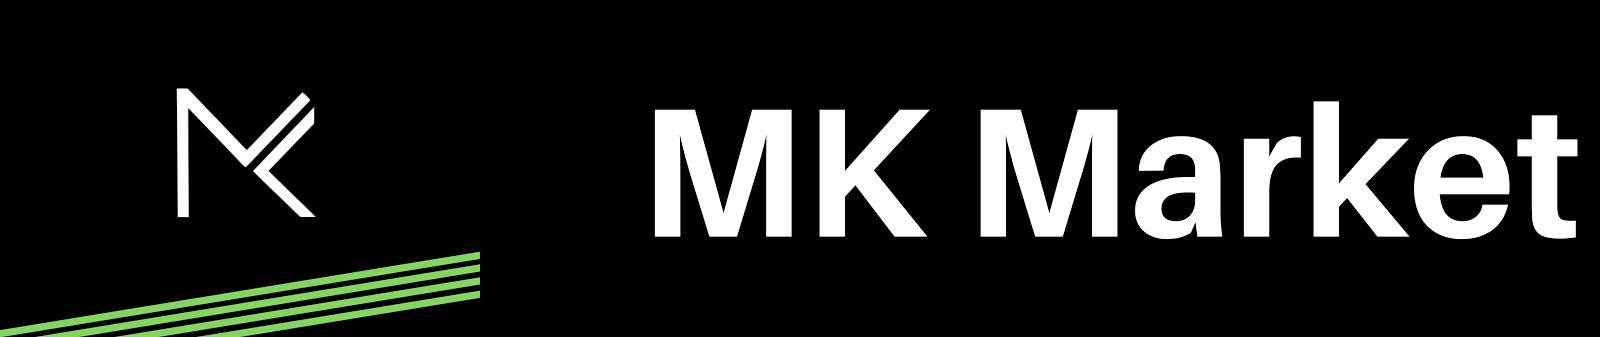 MK Market d.o.o.